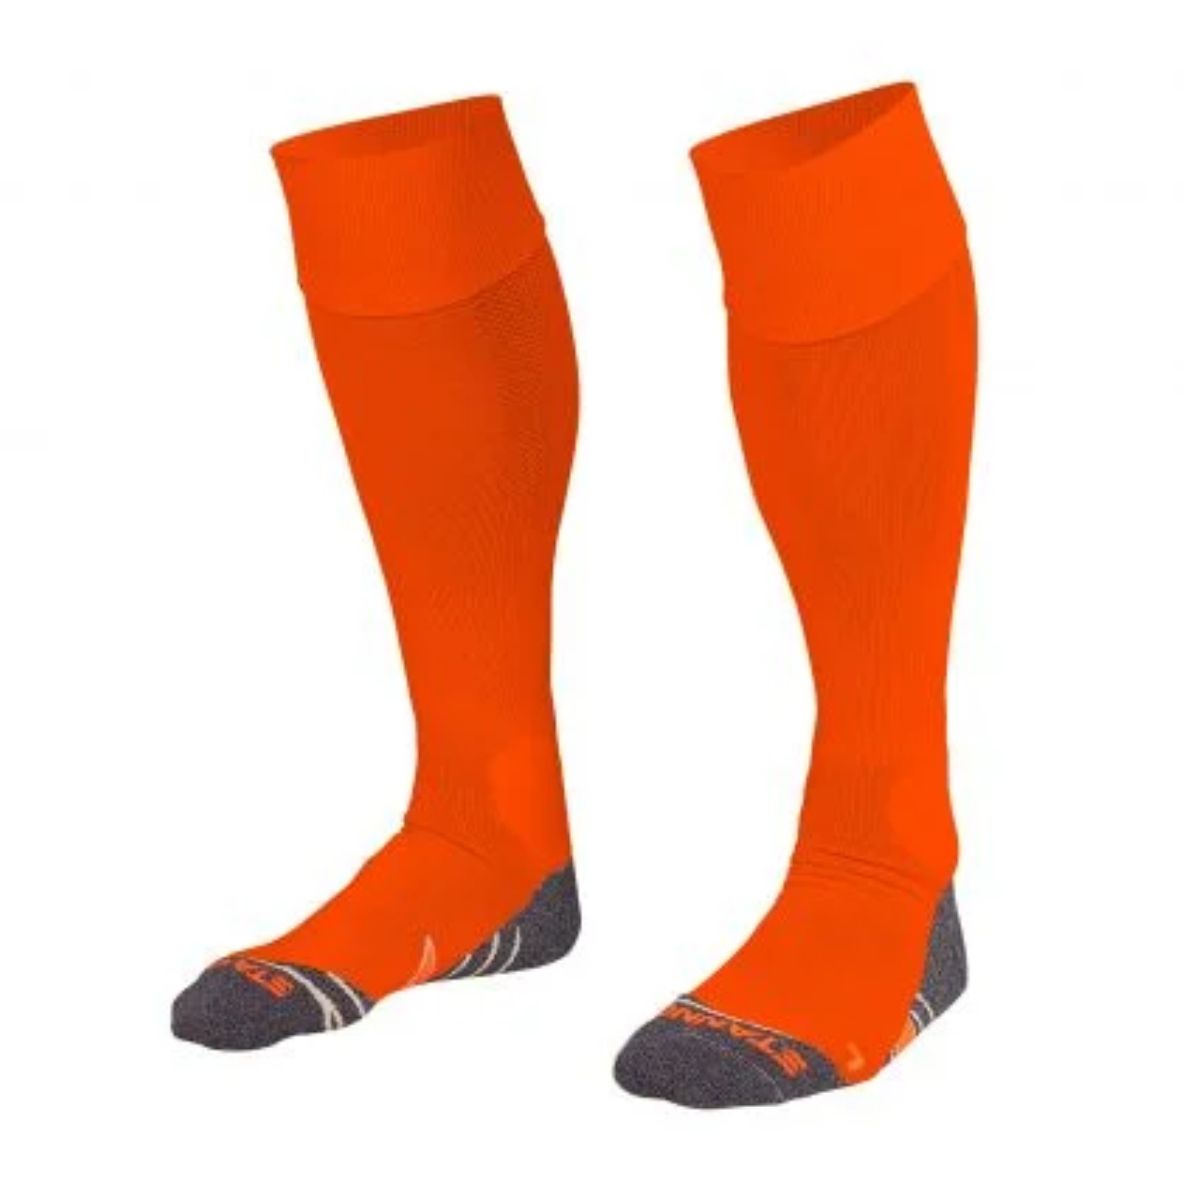 Stanno - Uni II Socks - Neon Orange - Adult